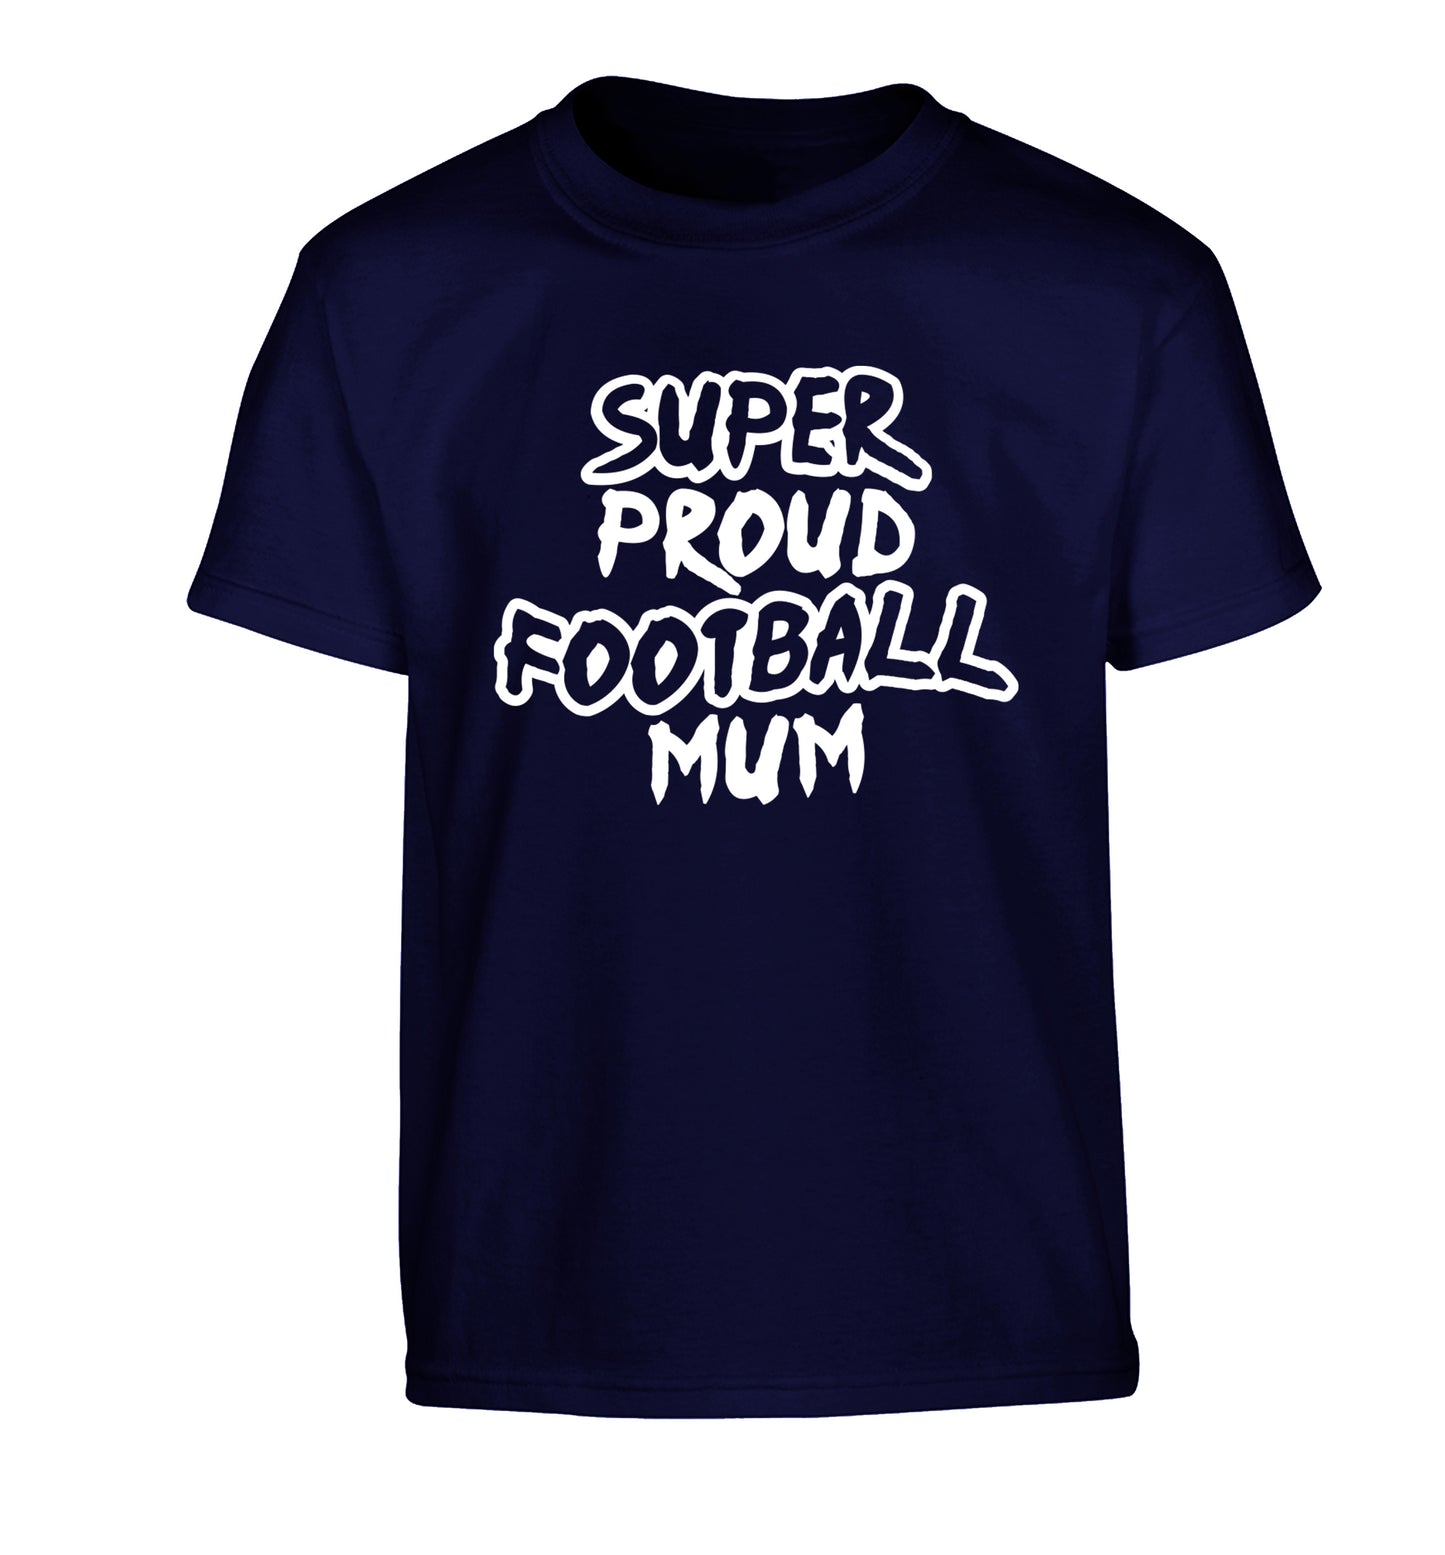 Super proud football mum Children's navy Tshirt 12-14 Years